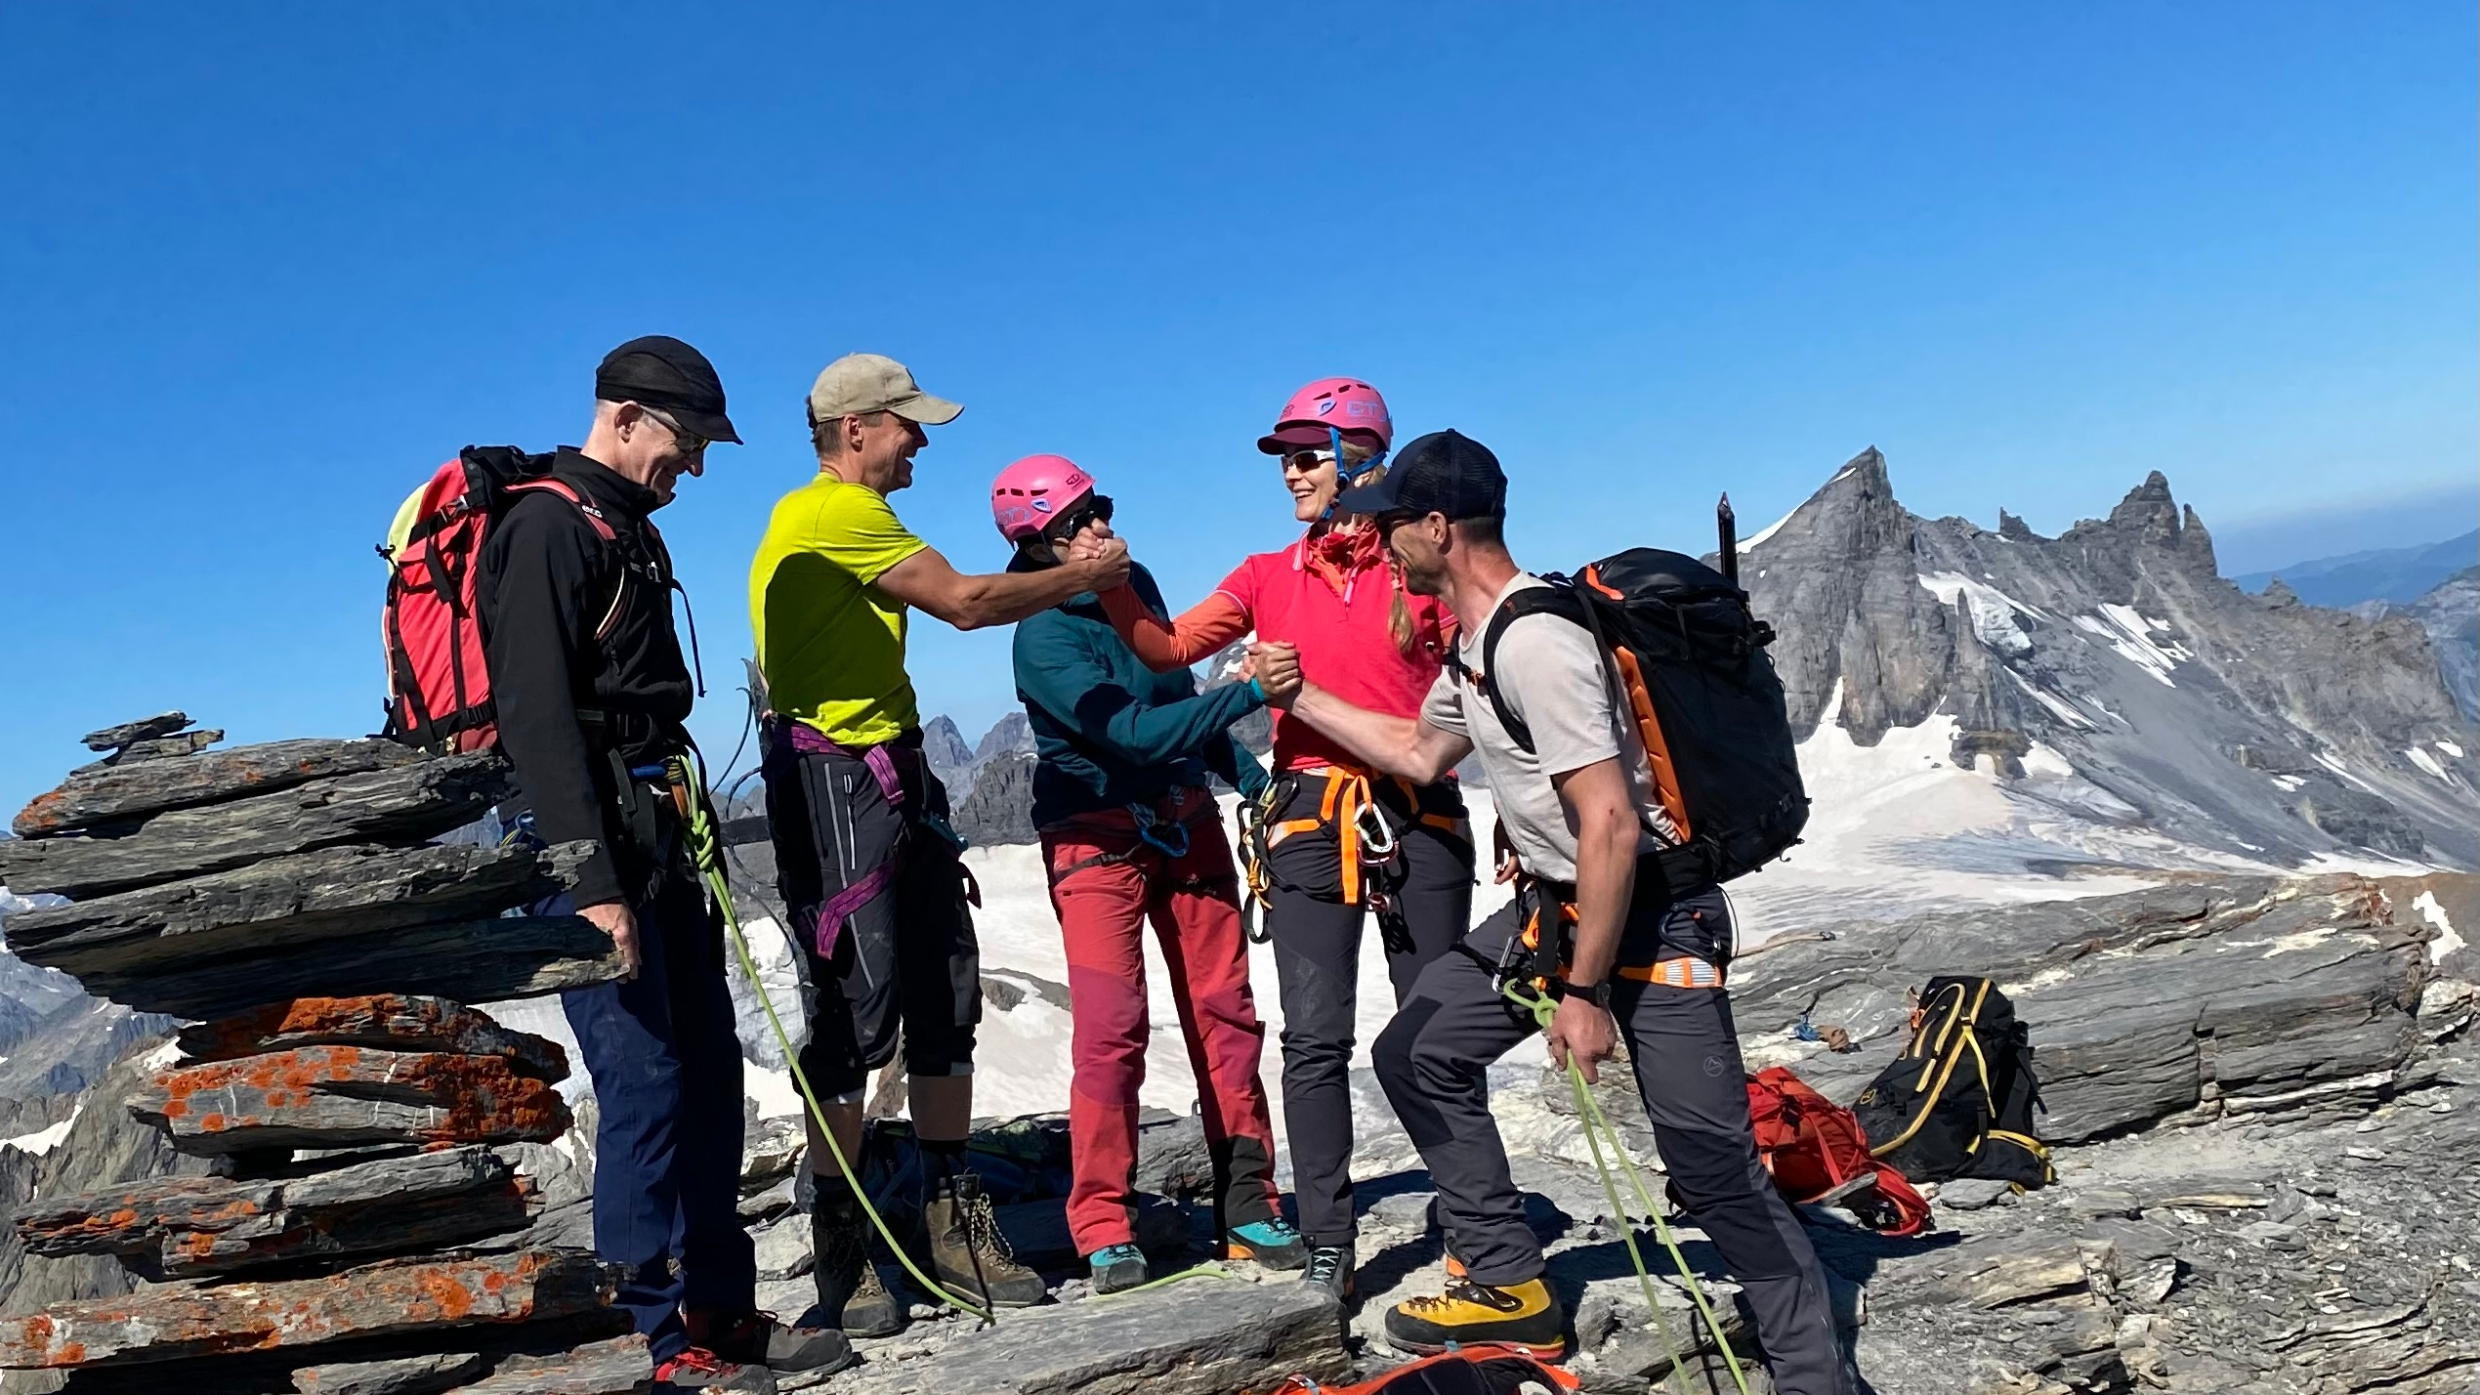 Berg+Ski: Bewegung, Teamspirit und Freude! (Hochtour Krönten)